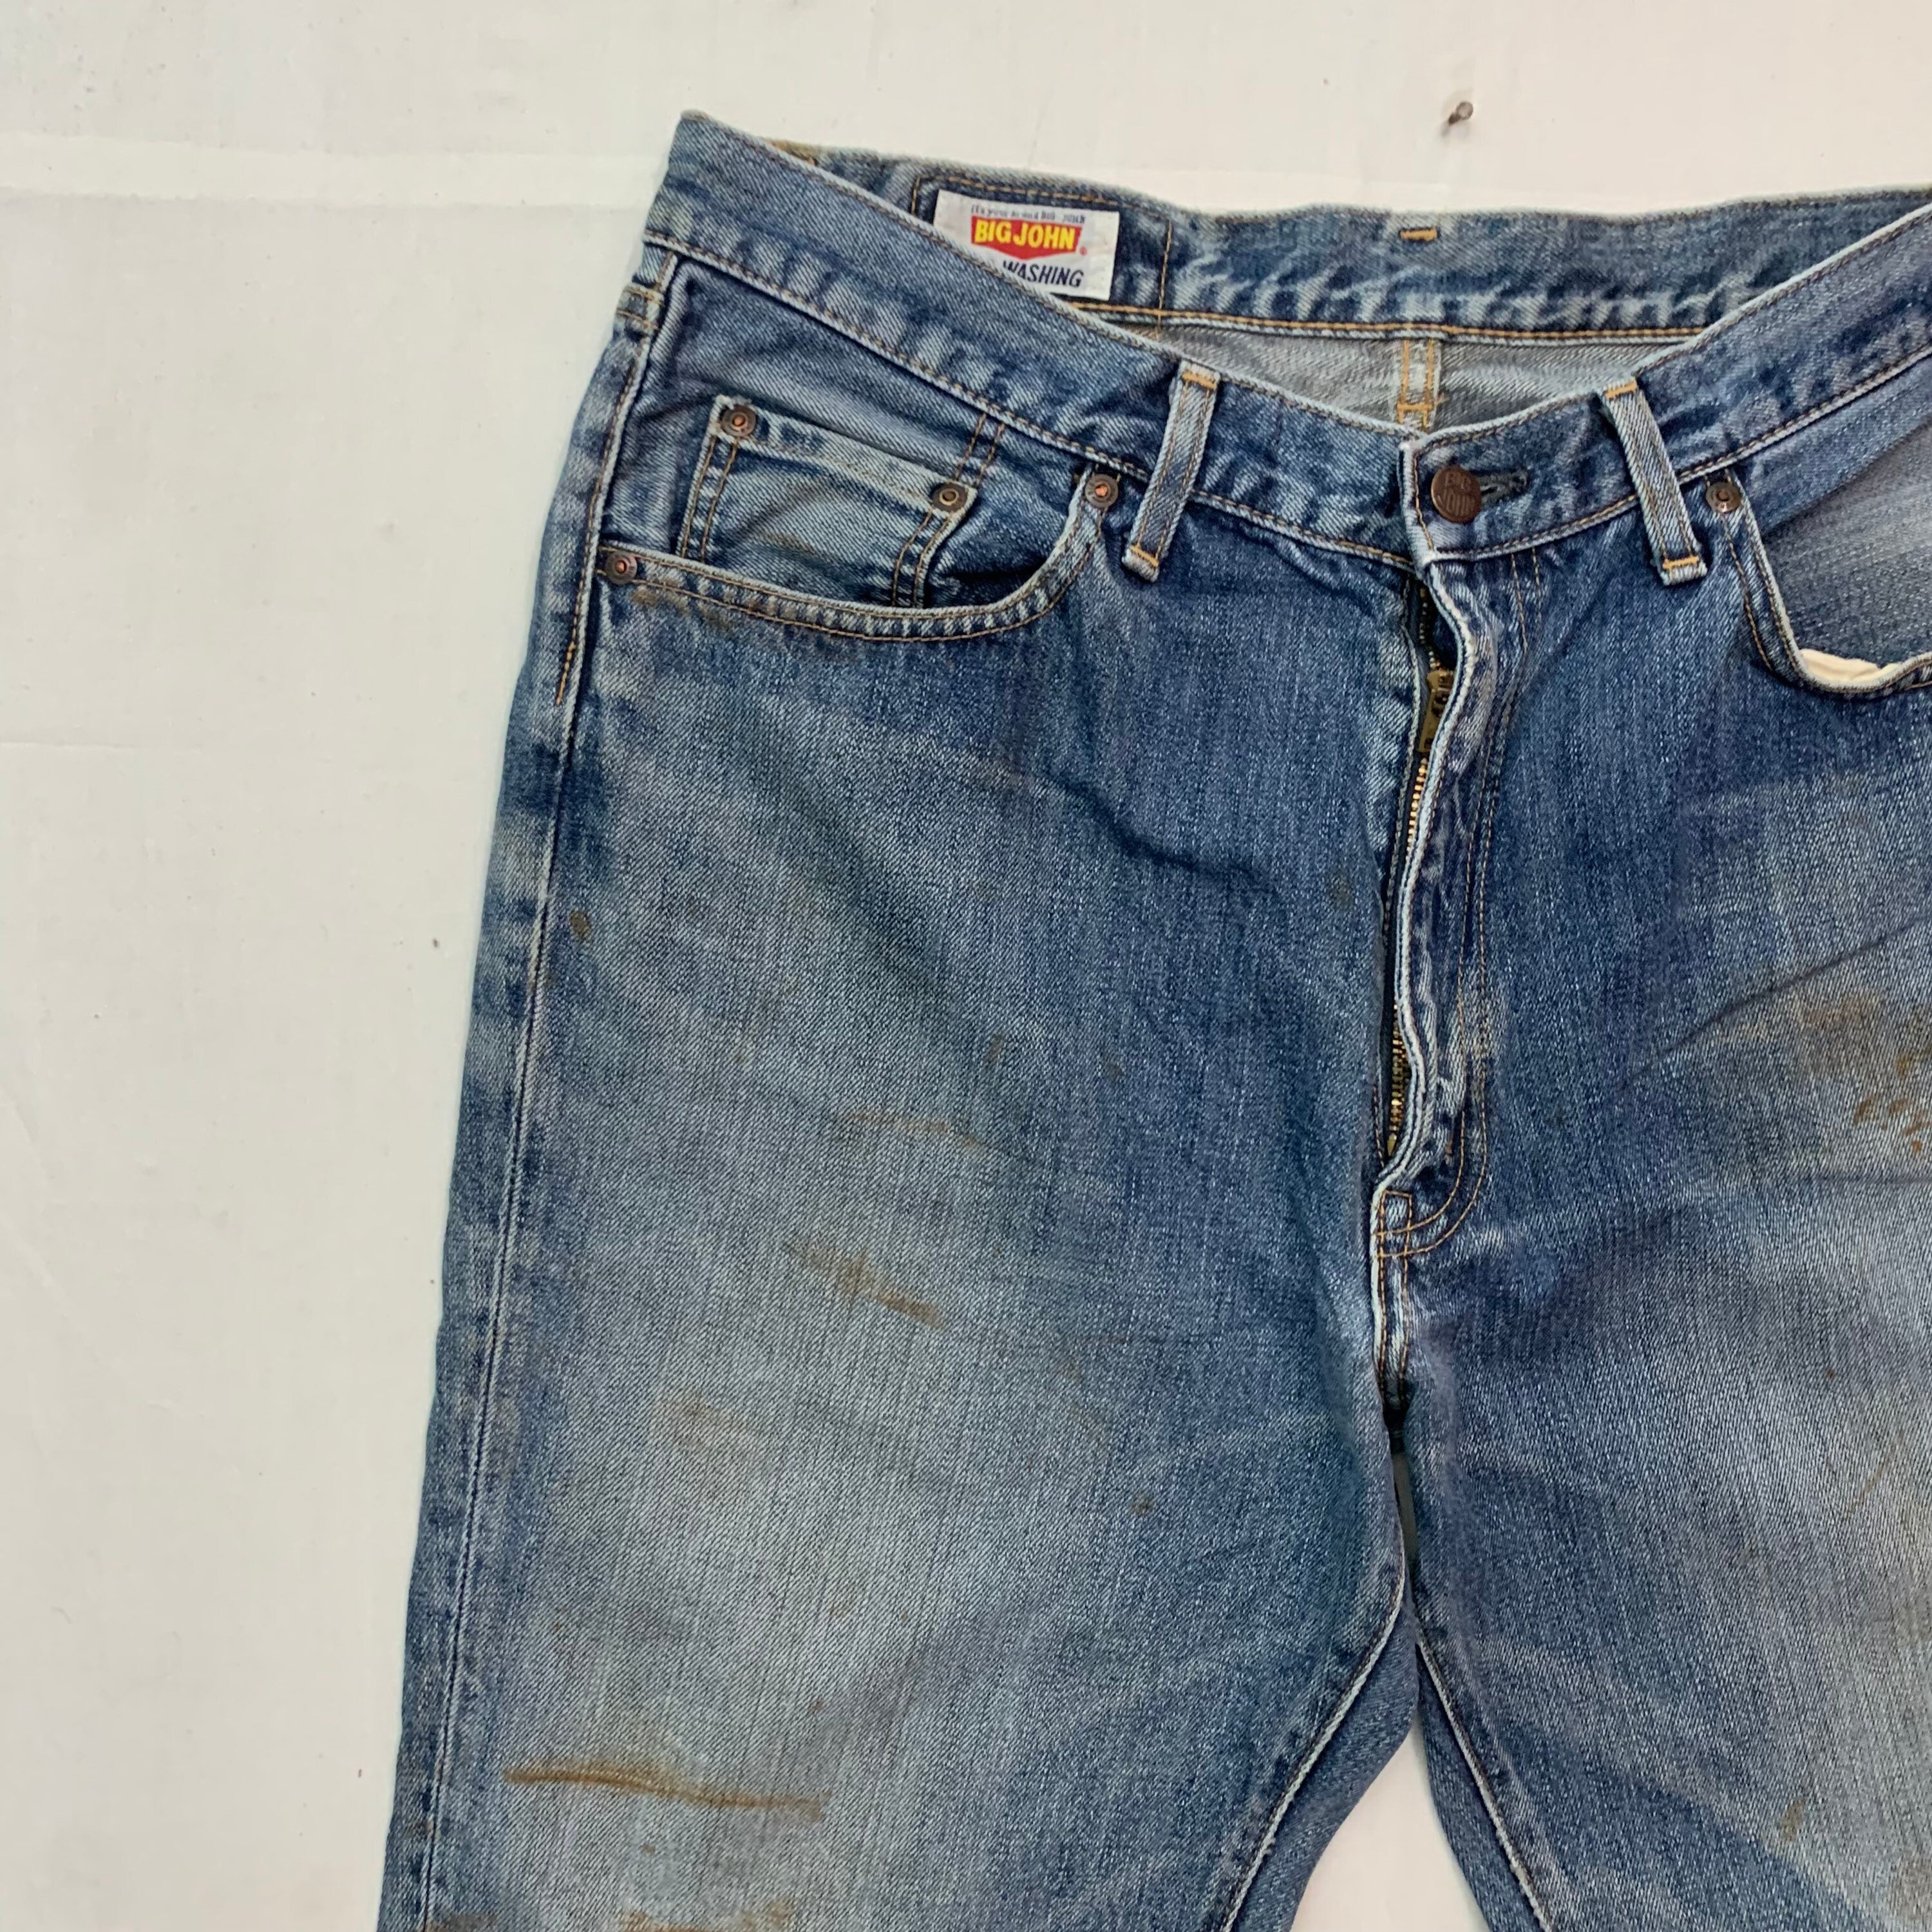 Vintage Big John Denim Jeans Vintage Big John Distressed Denim | Etsy